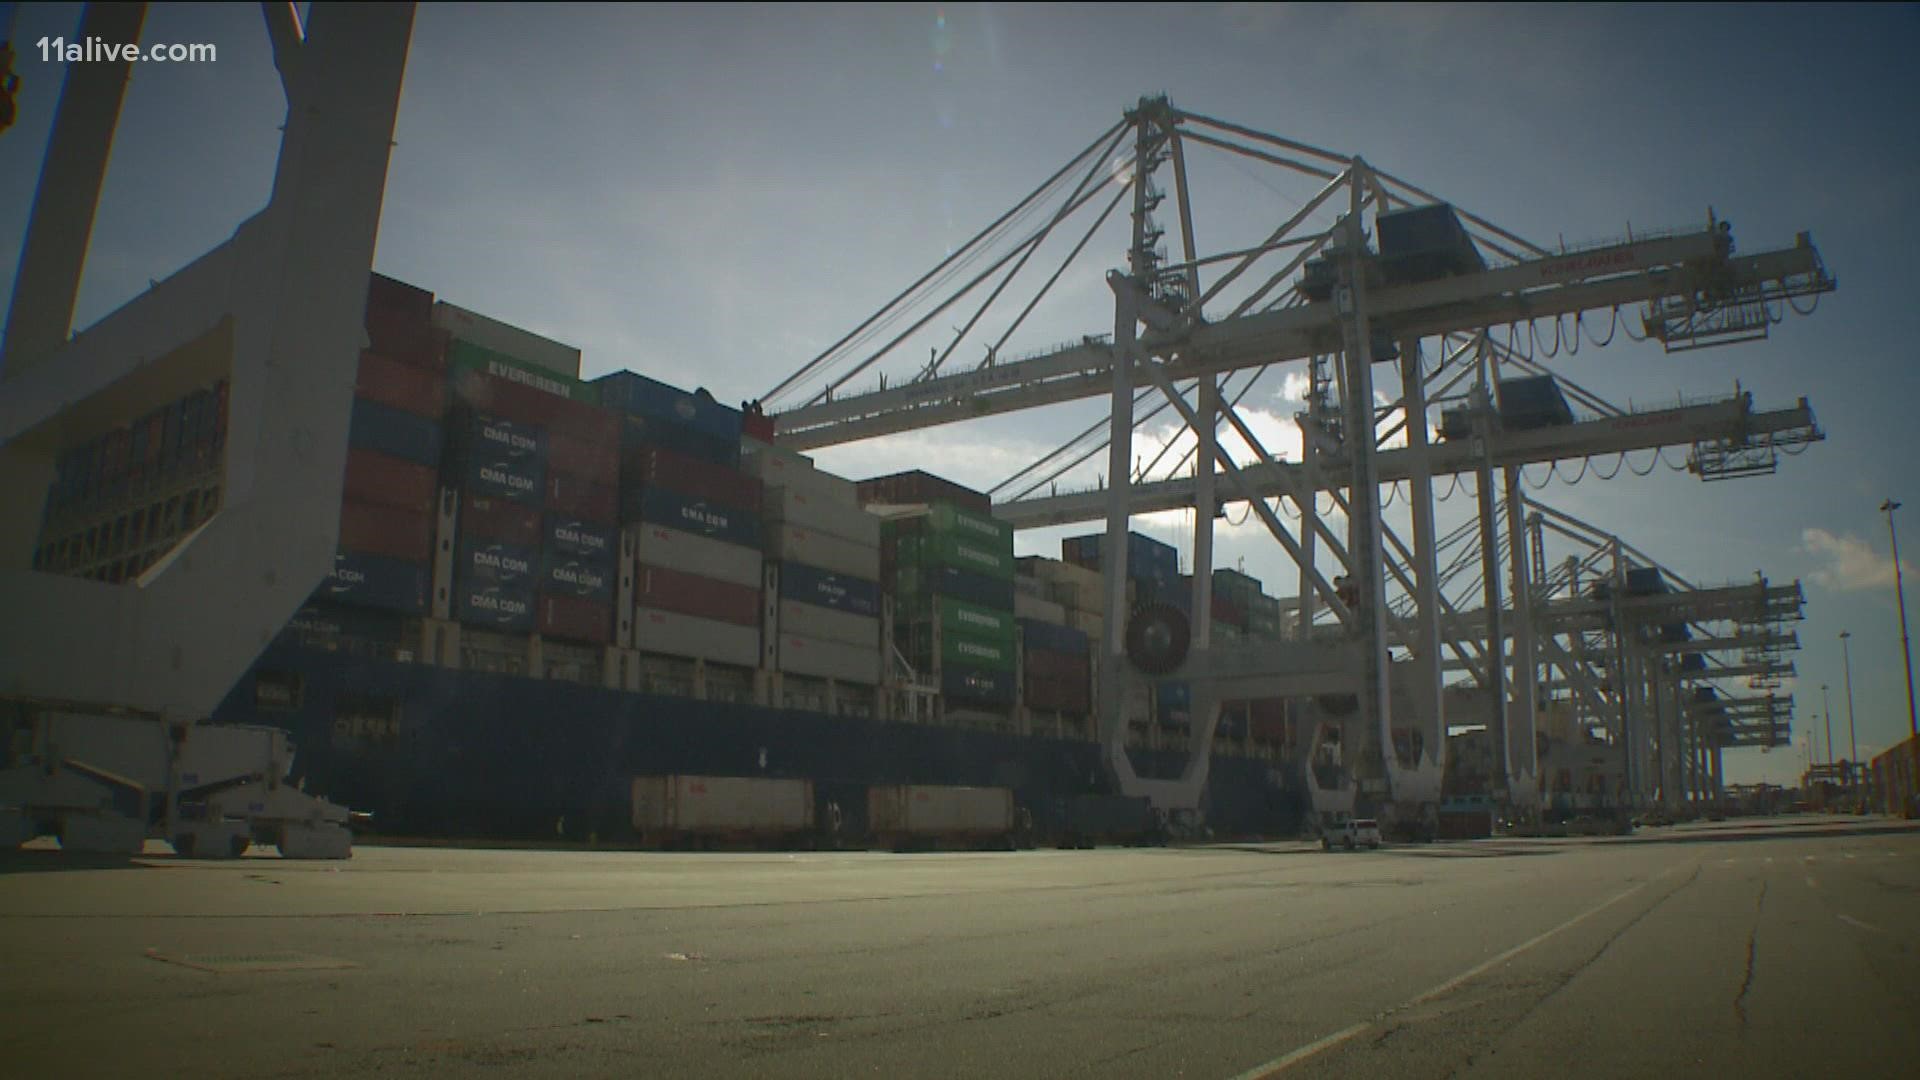 Port normally thrives due to proximity, capacity